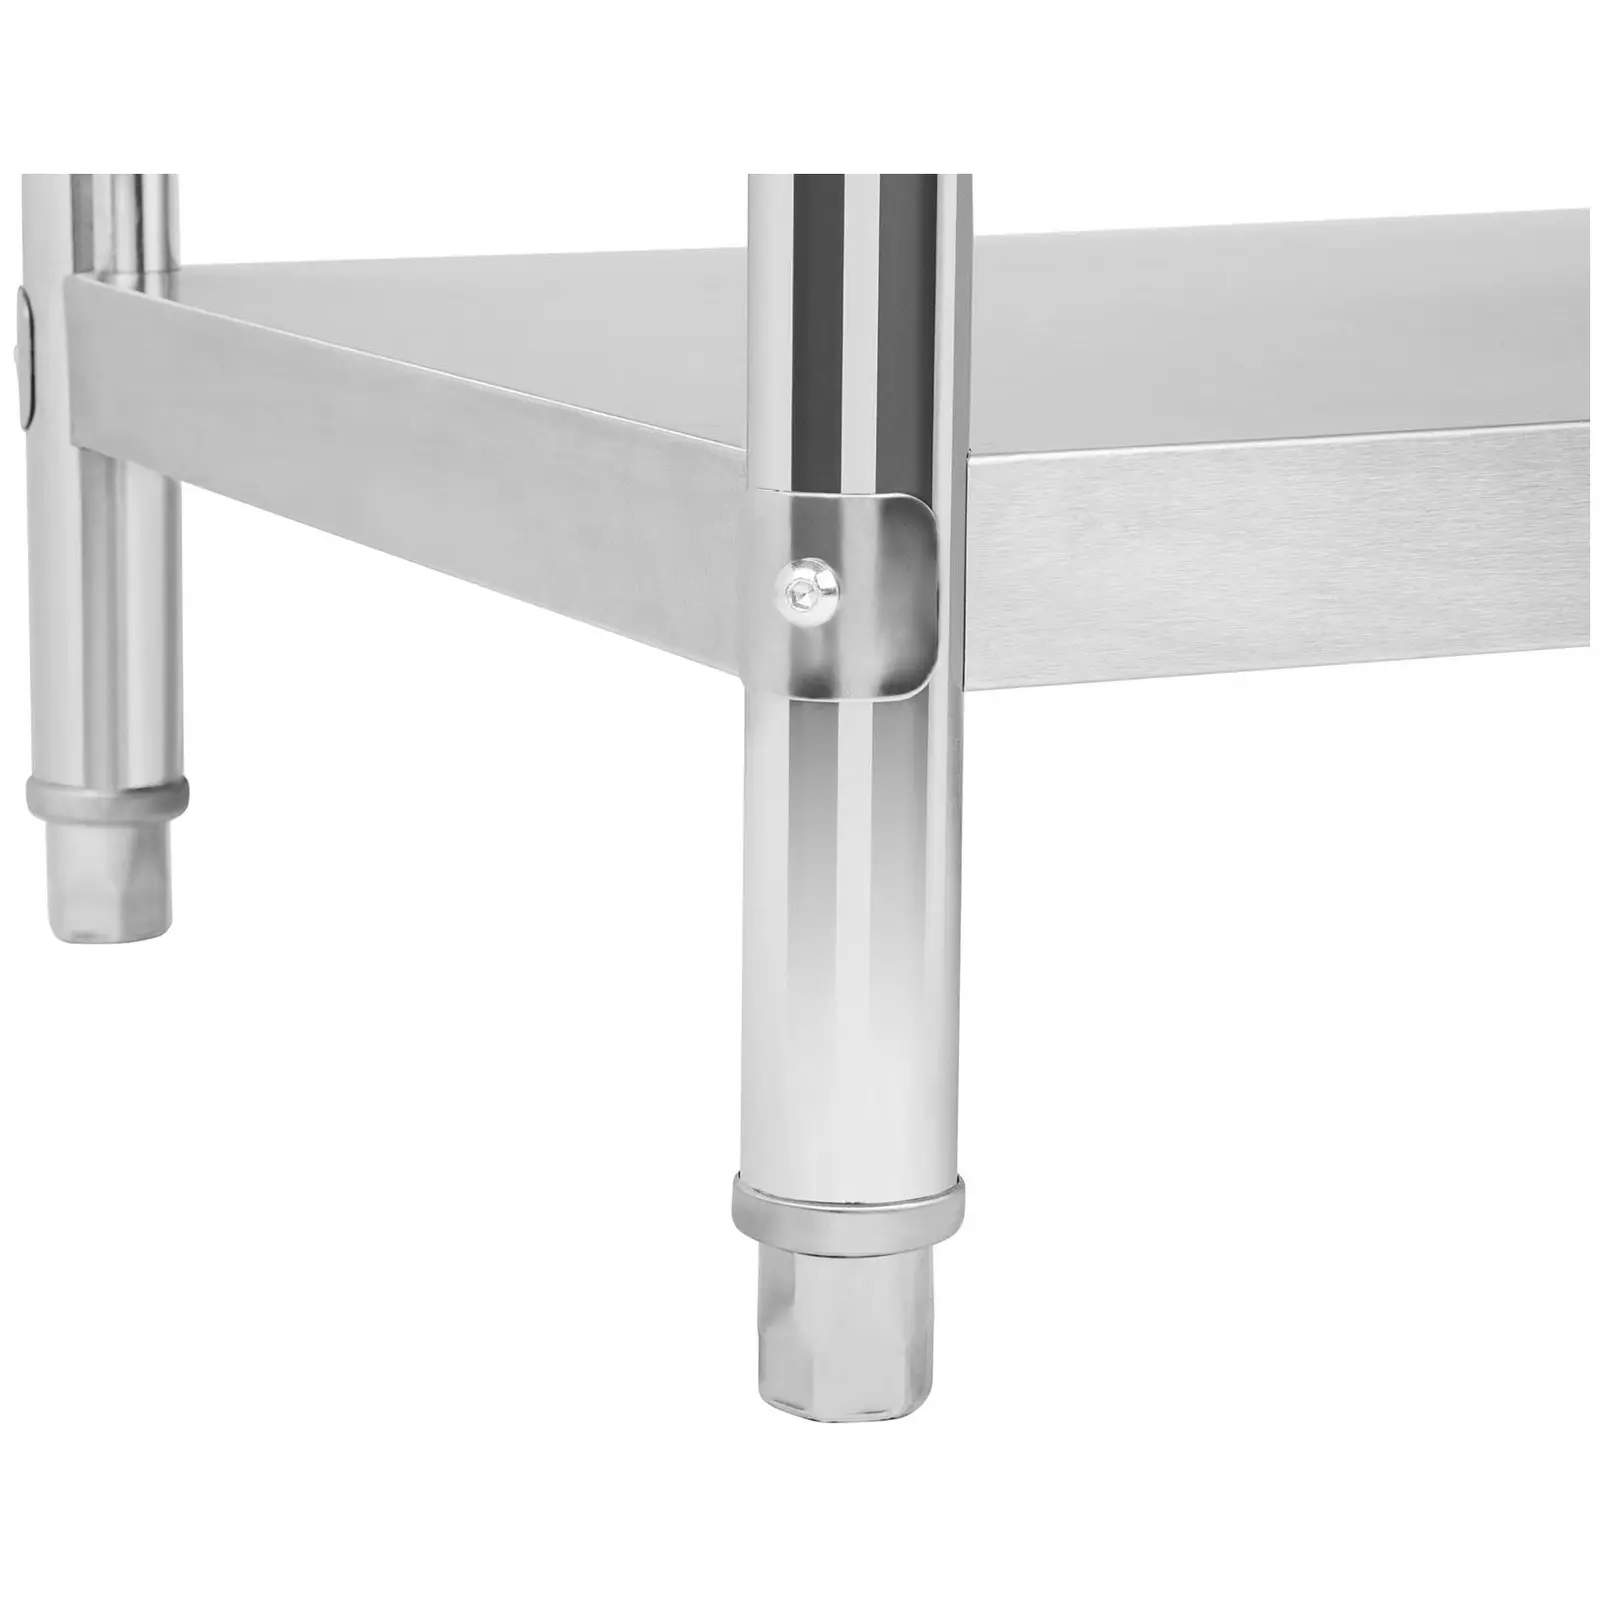 Occasion Table de travail en inox - 150 x 60 cm - Avec dosseret - Capacité de charge de 130 kg